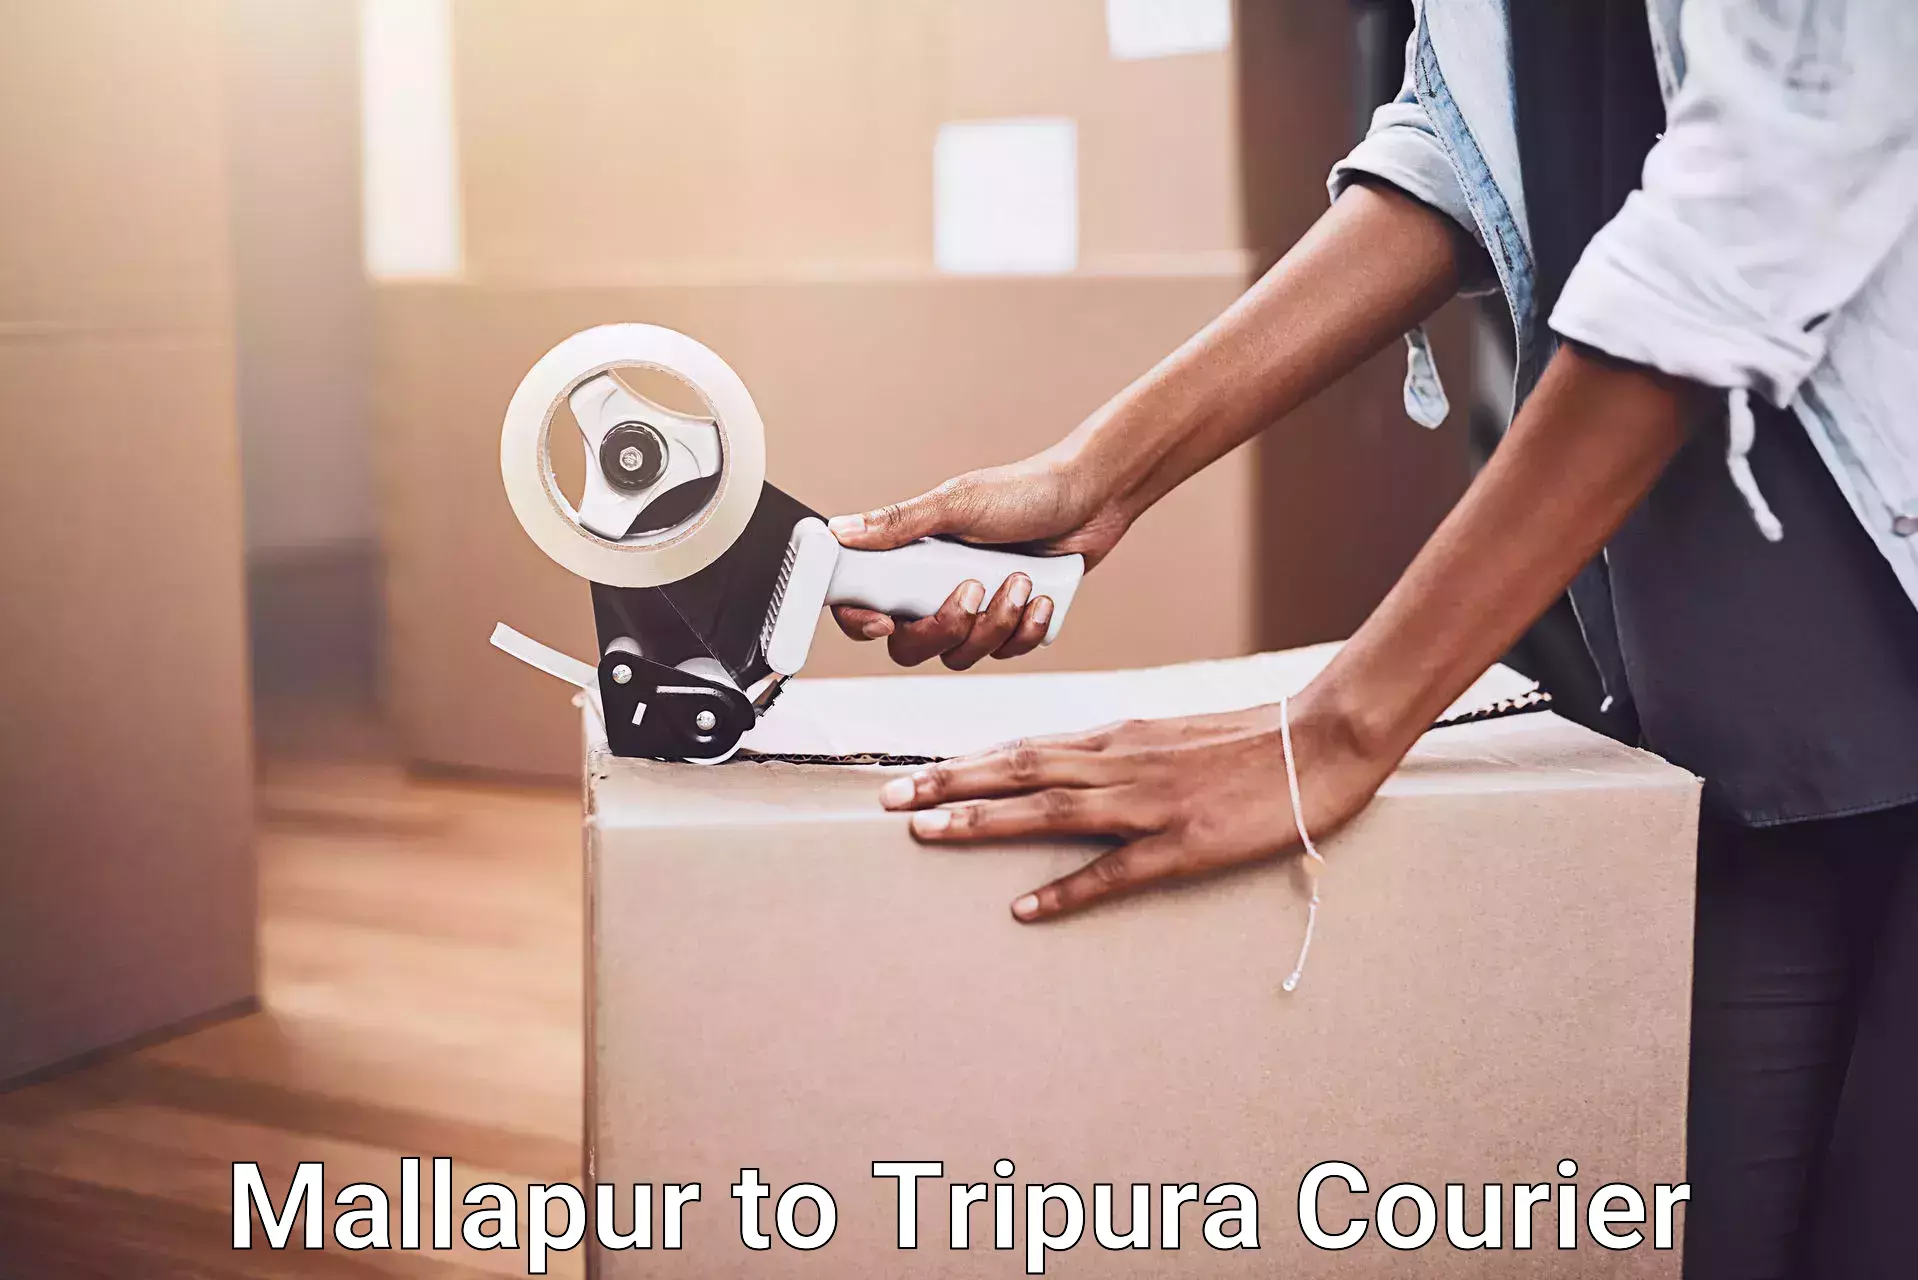 Full-service furniture transport Mallapur to IIIT Agartala